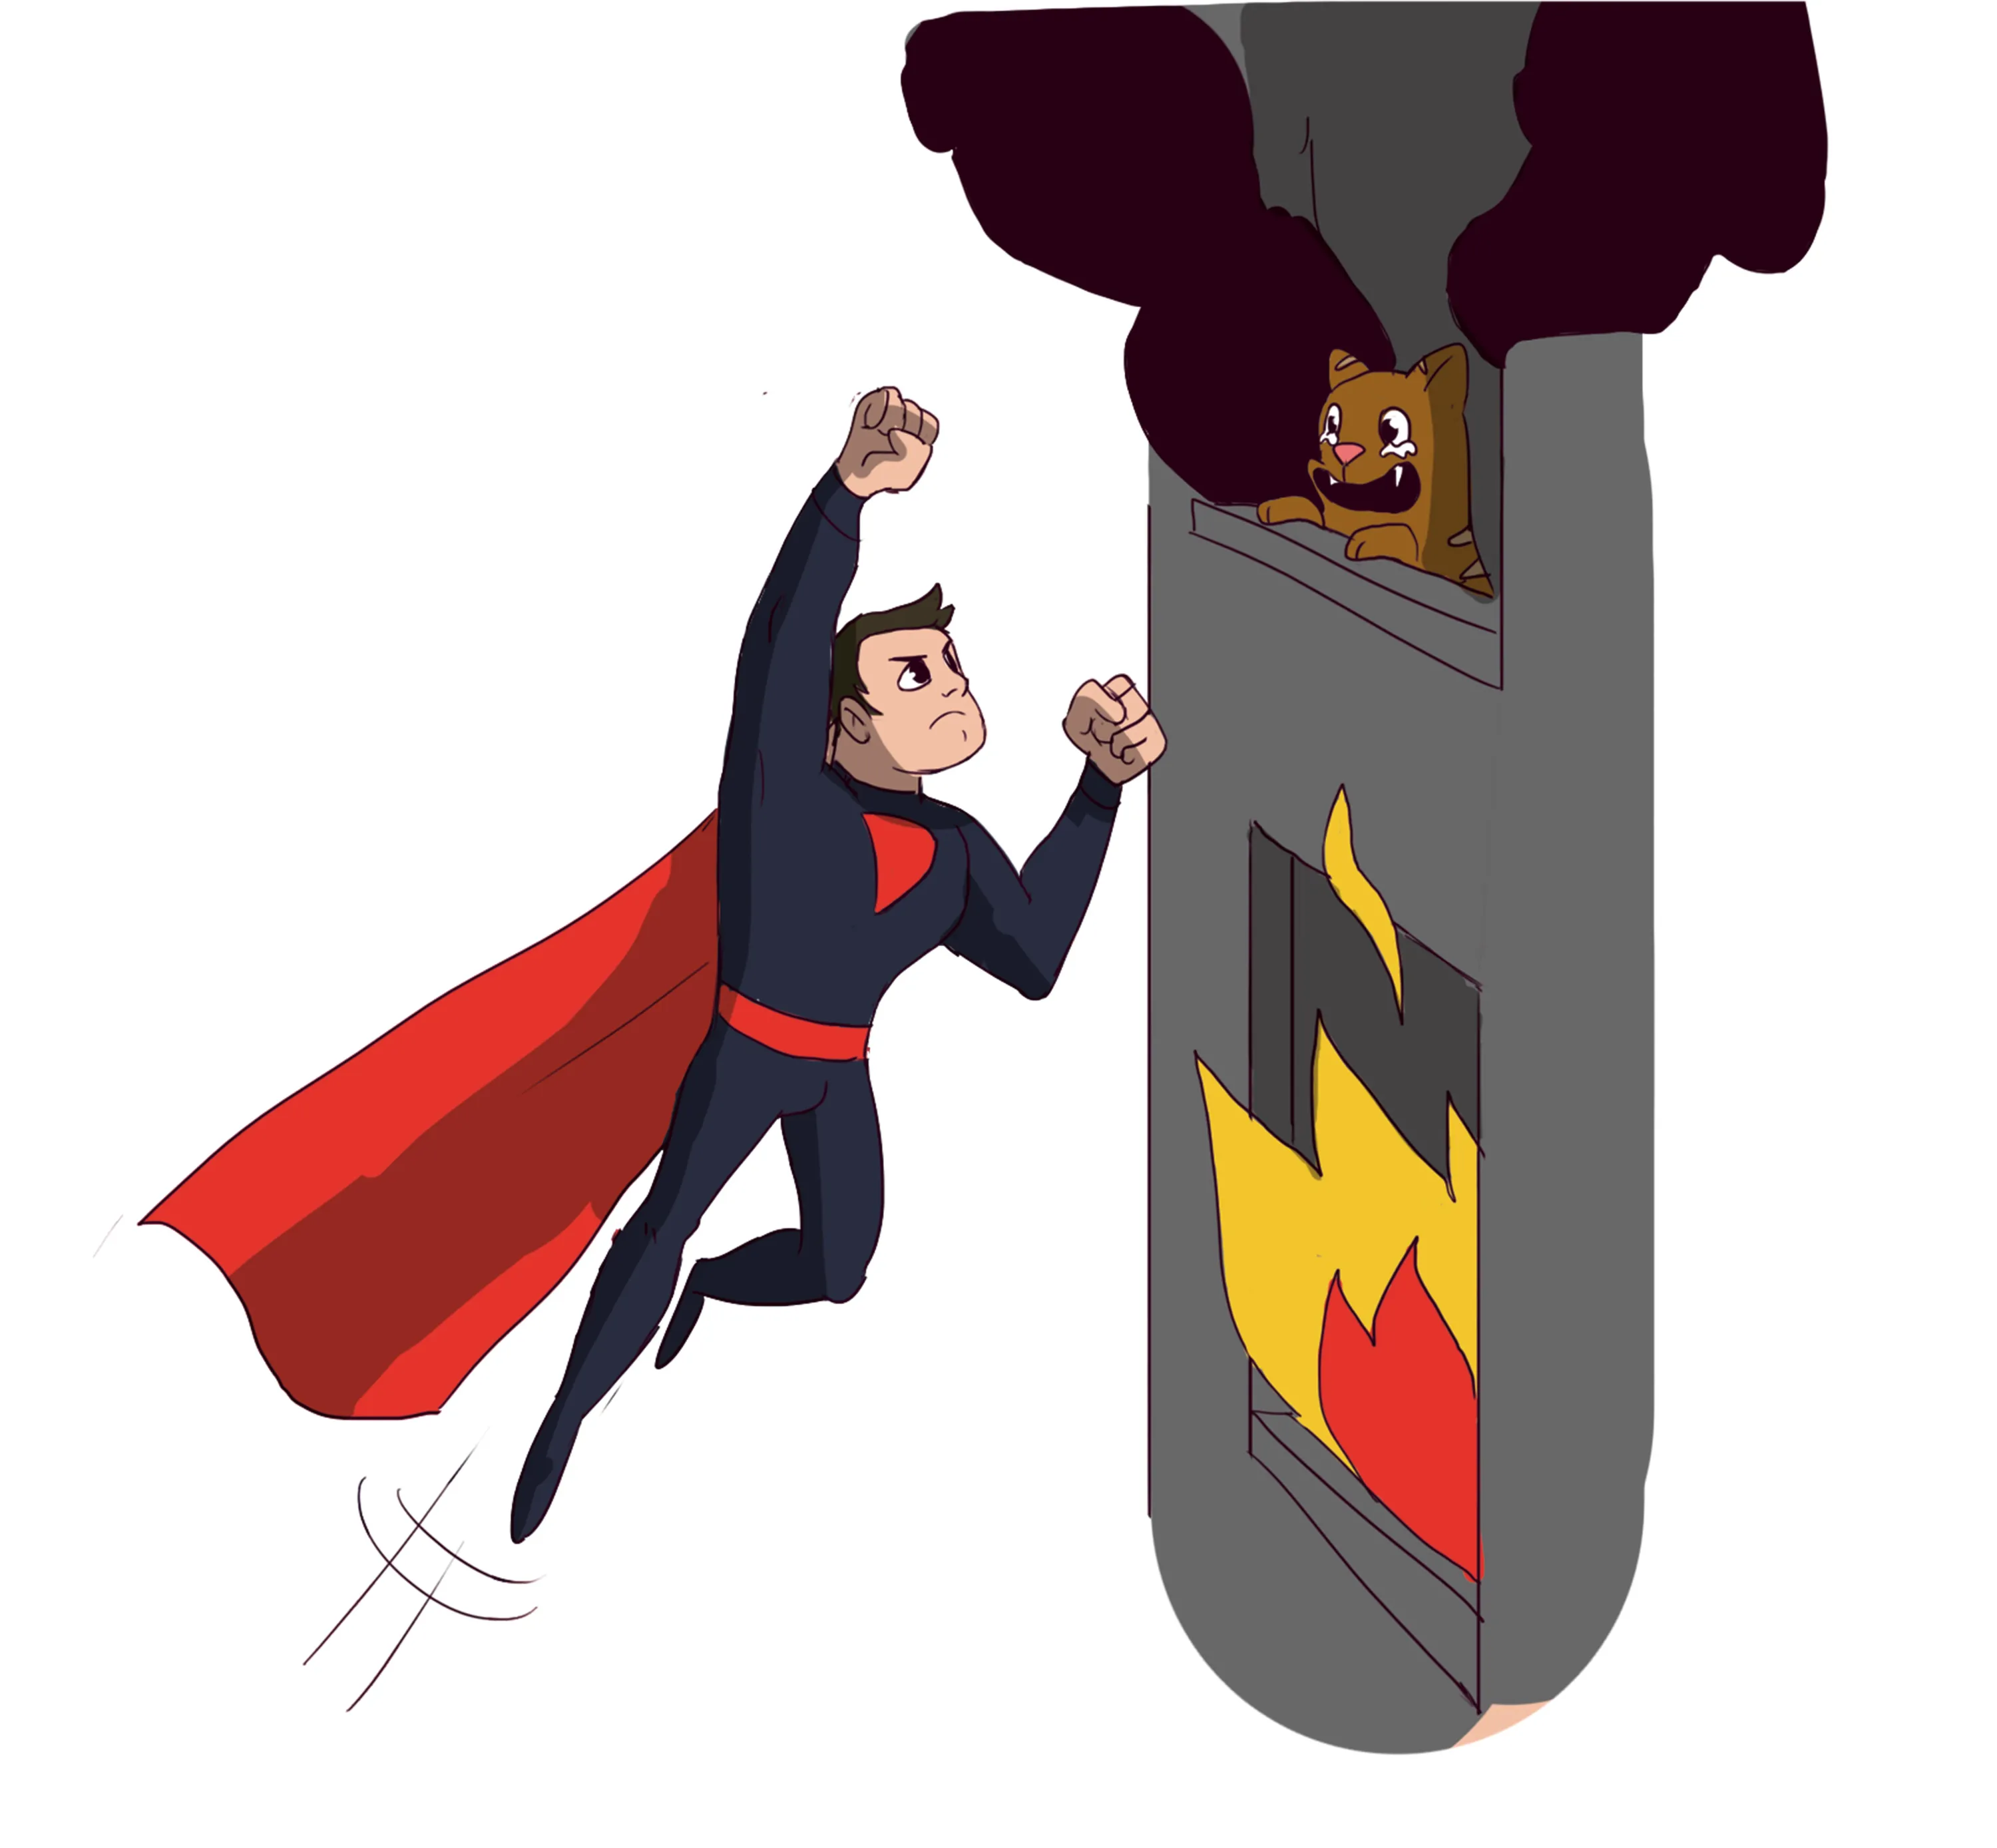 Dessin d'un super-héro secourant une personne dans un incendie